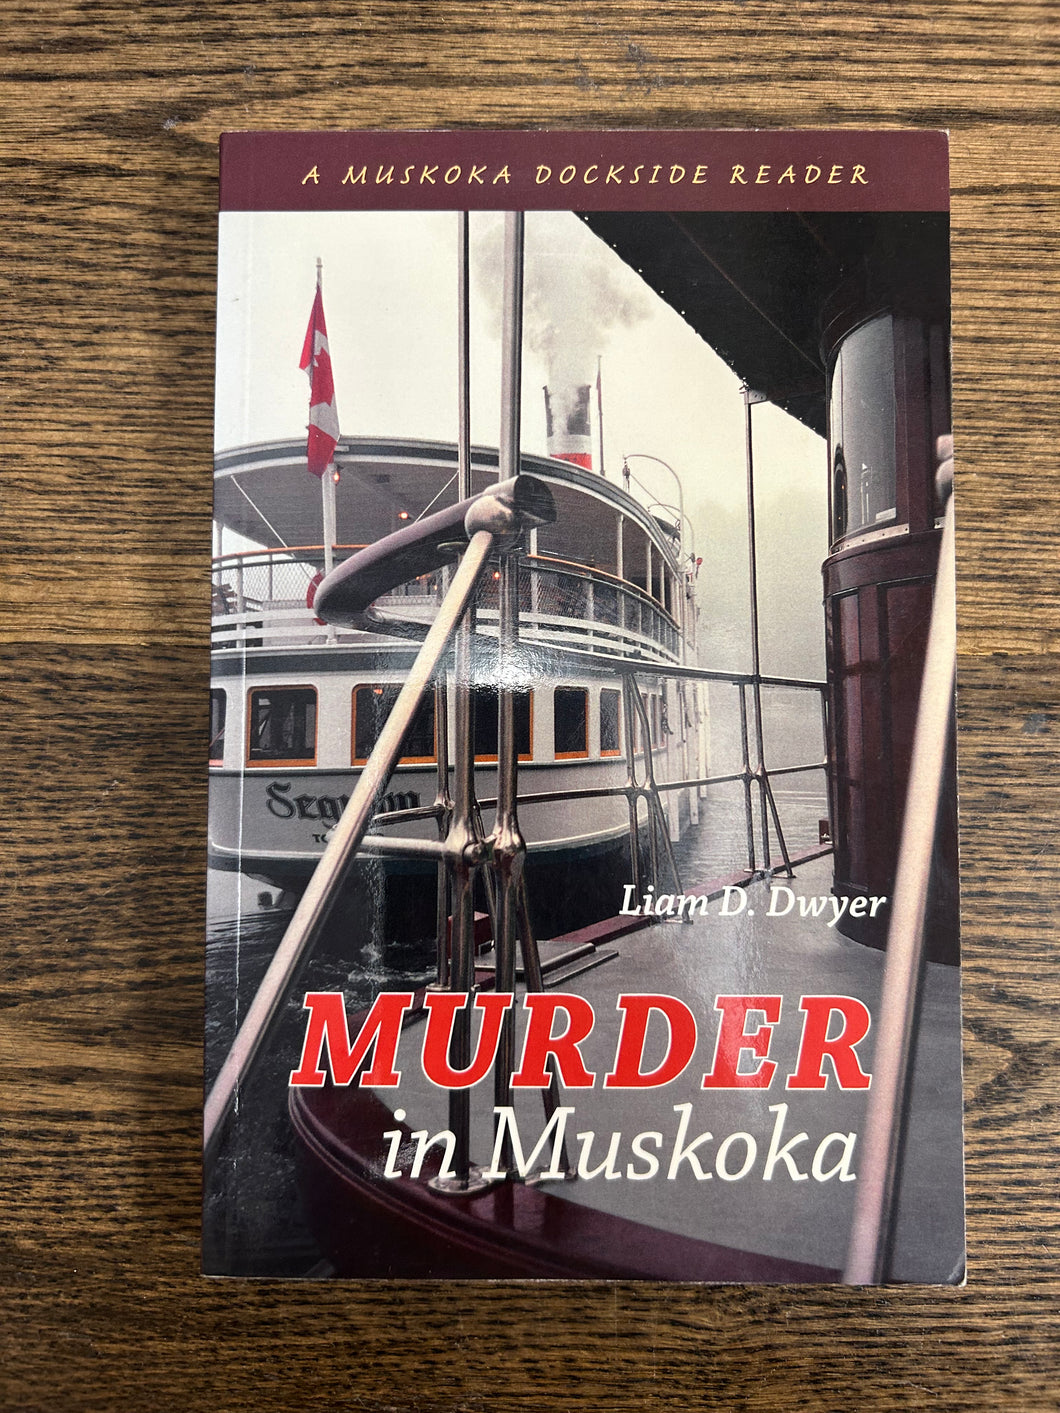 Murder in Muskoka